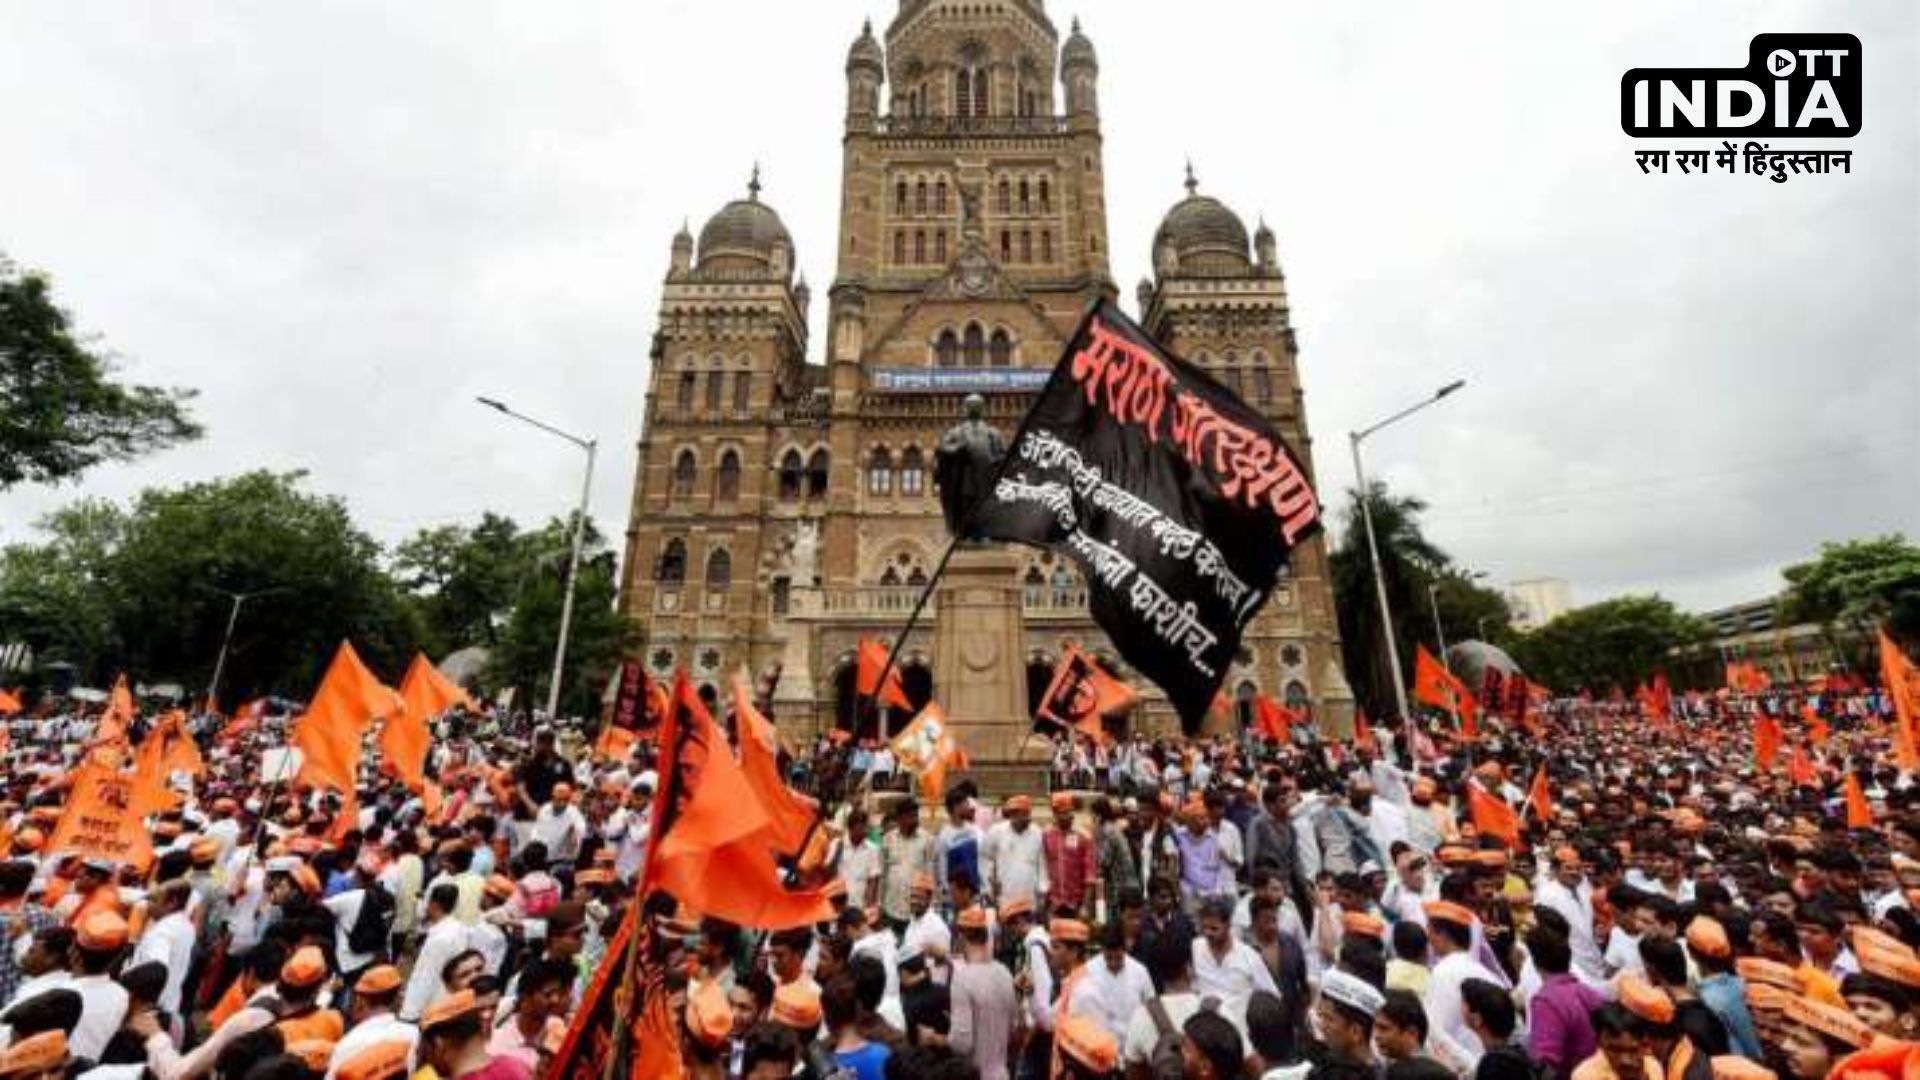 Maratha Reservation News : तेज होती जा रही है मराठा आरक्षण की मांग, हिंसक होते जा रहे विरोध प्रर्दशन, पढ़िए पूरी खबर…